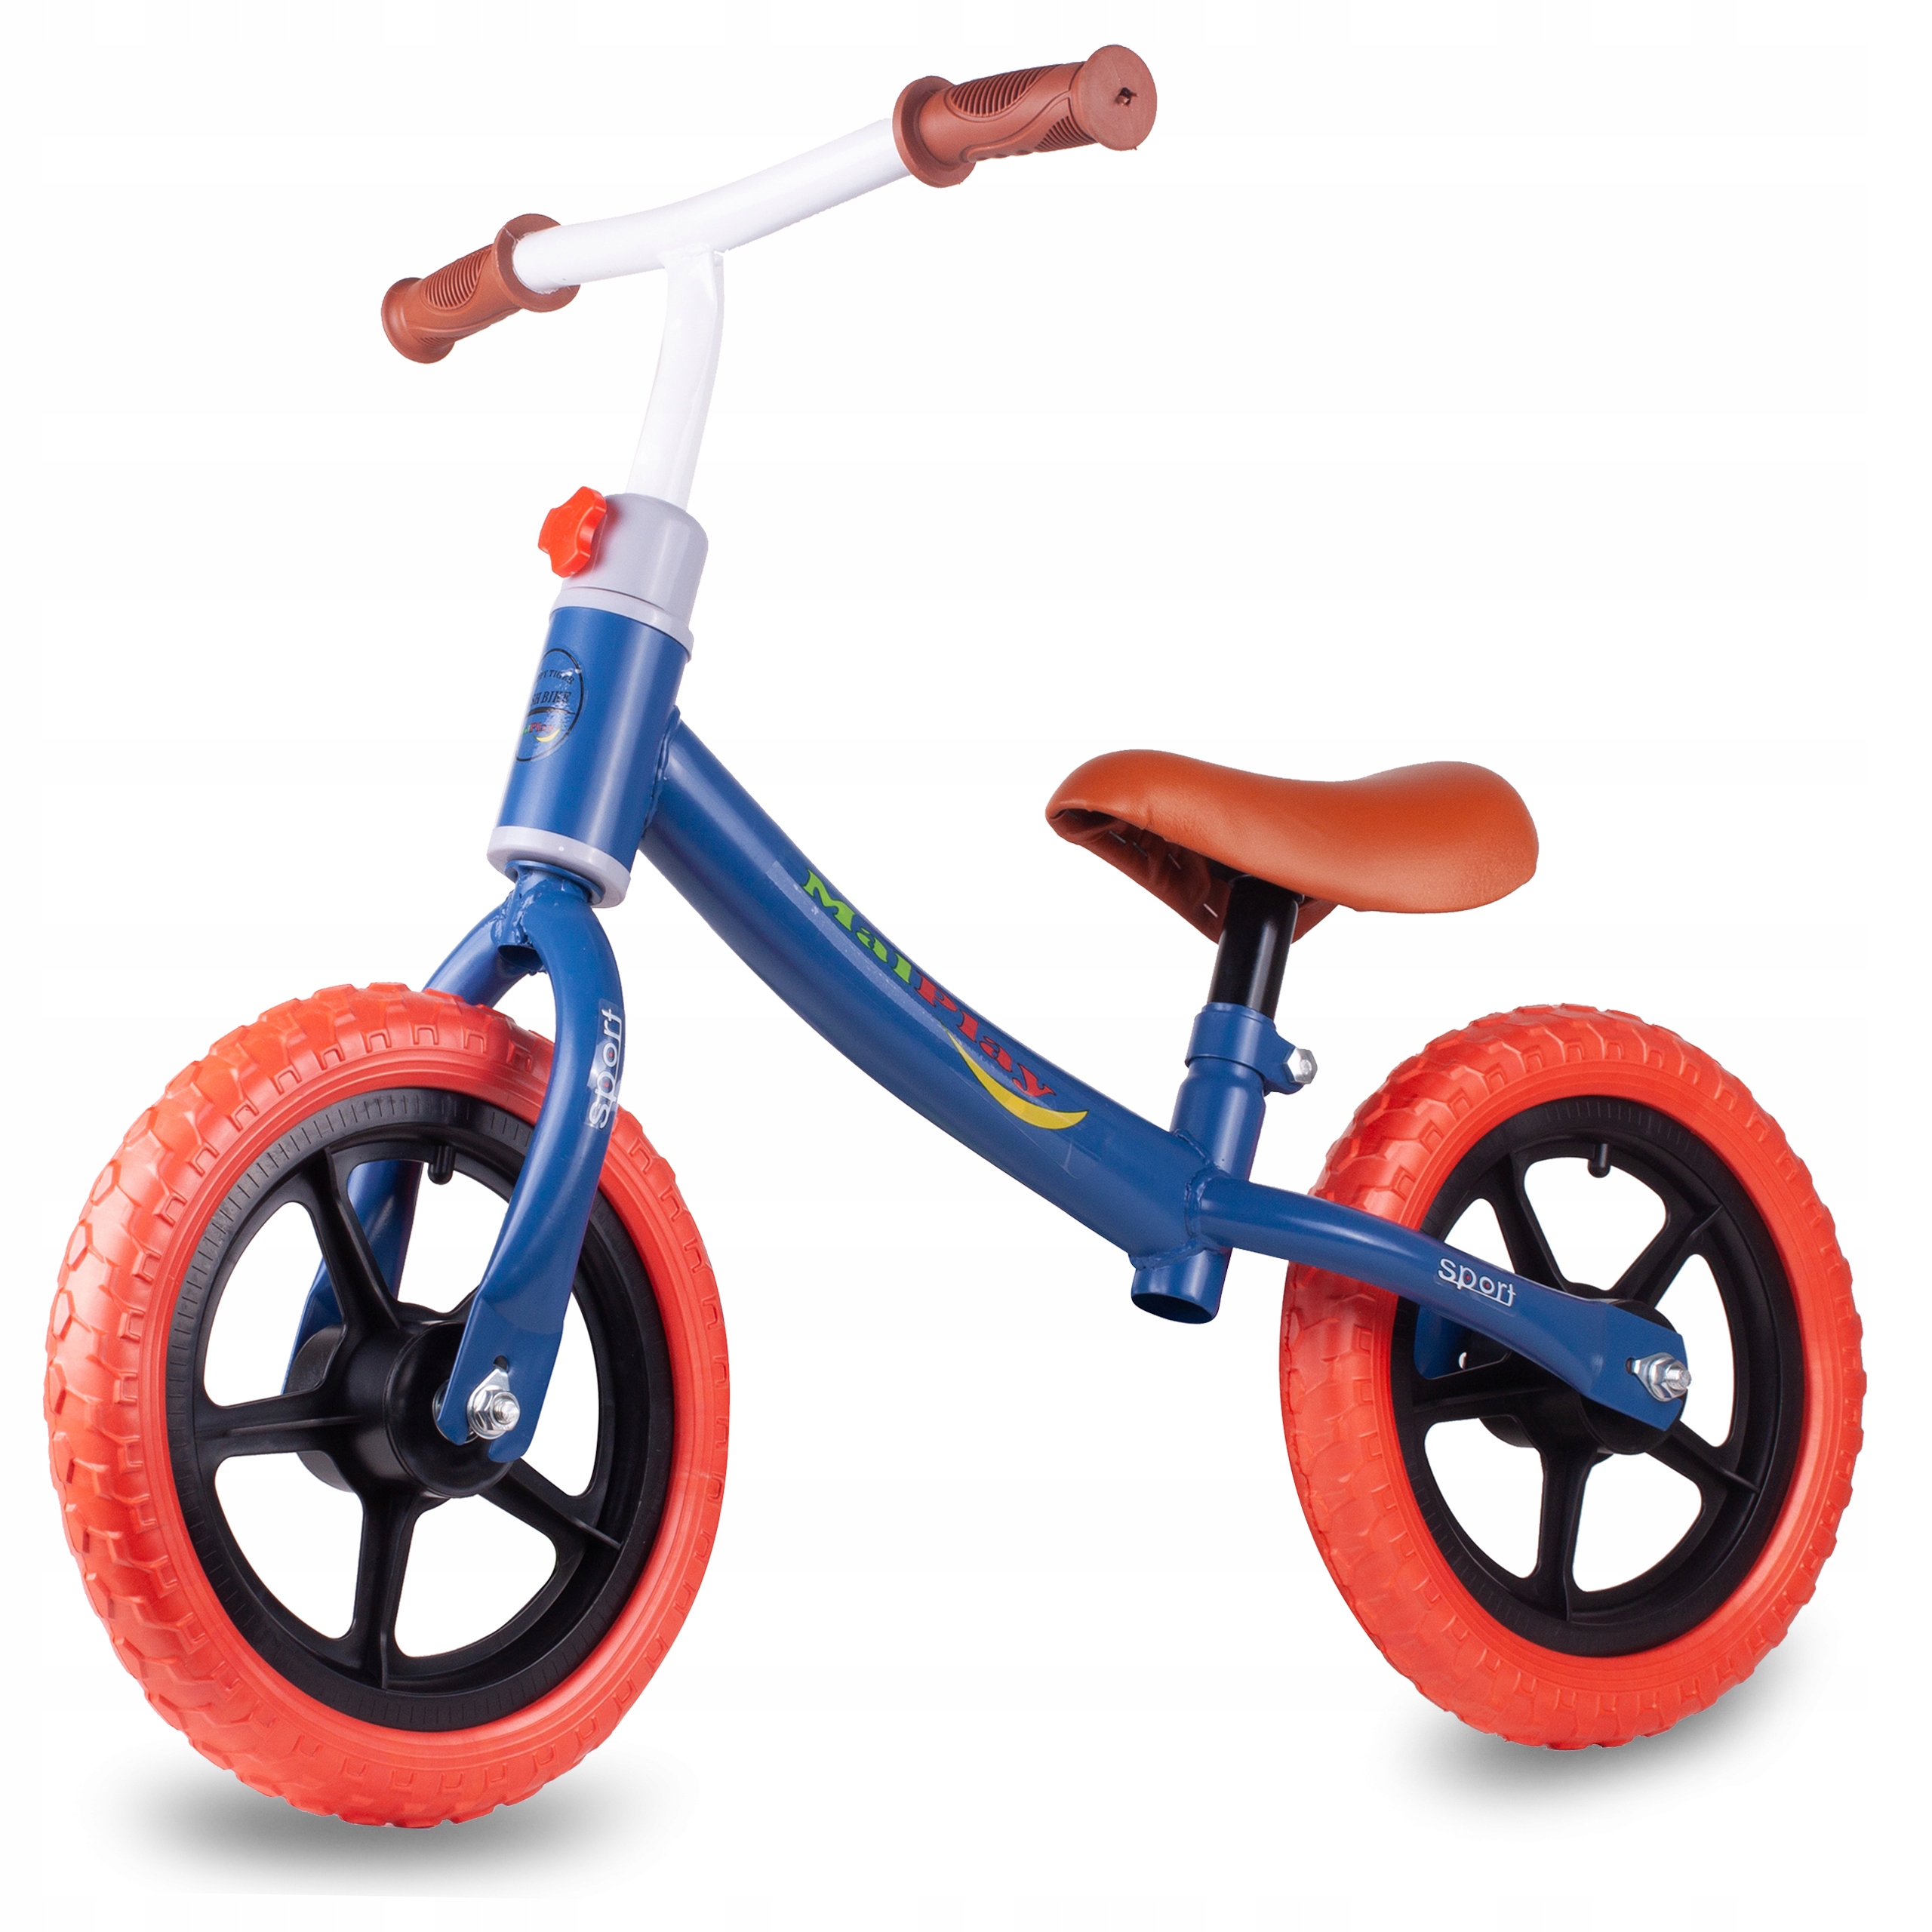 Беговел lr m. Milly Mally балансировочный велосипед look для детей от 1,5 лет. Беговел красный. Беговел синий. 4 Колесный беговел балансировочный.